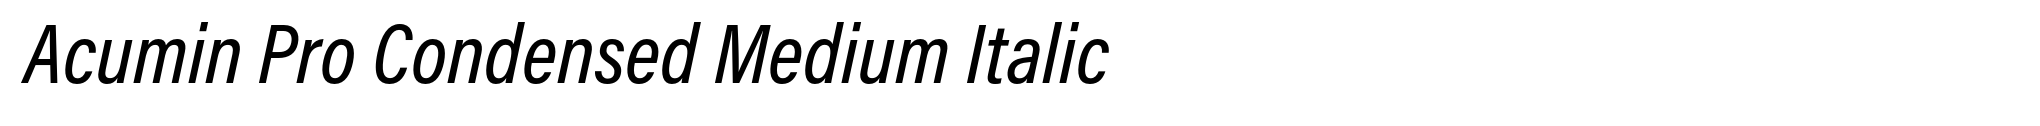 Acumin Pro Condensed Medium Italic image